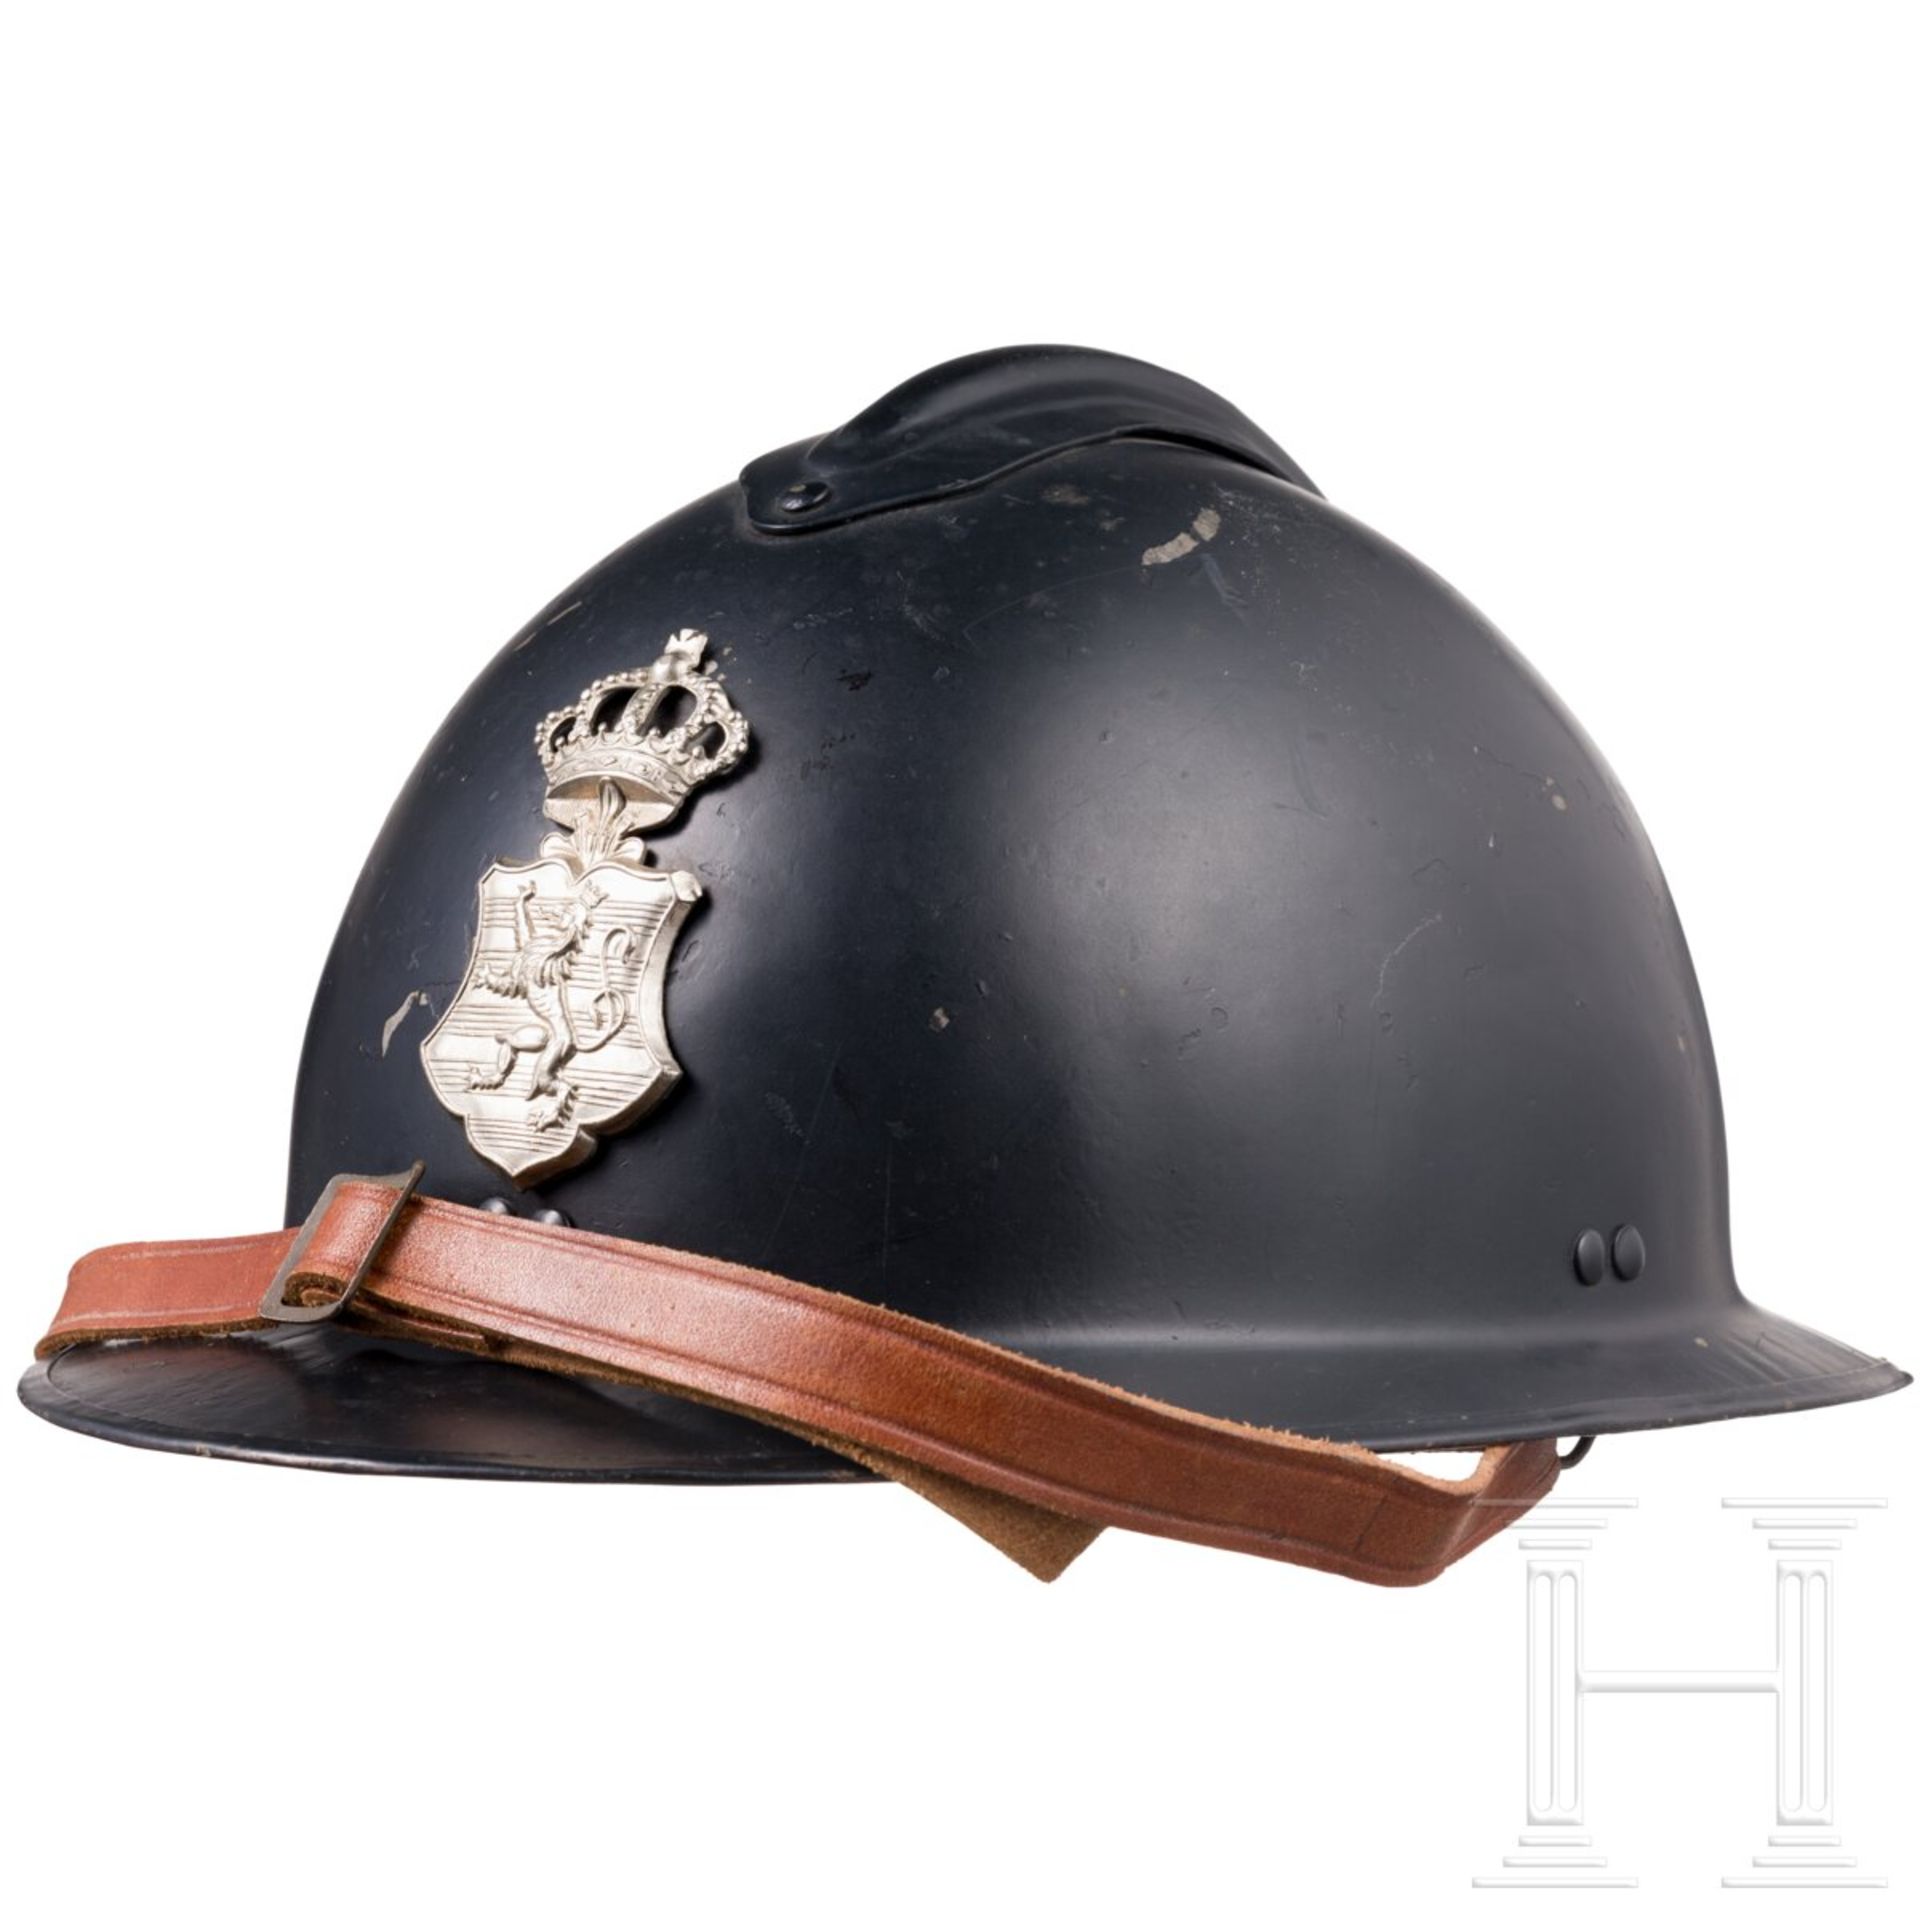 Helm der Gendarmerie, Luxemburg, um 1940